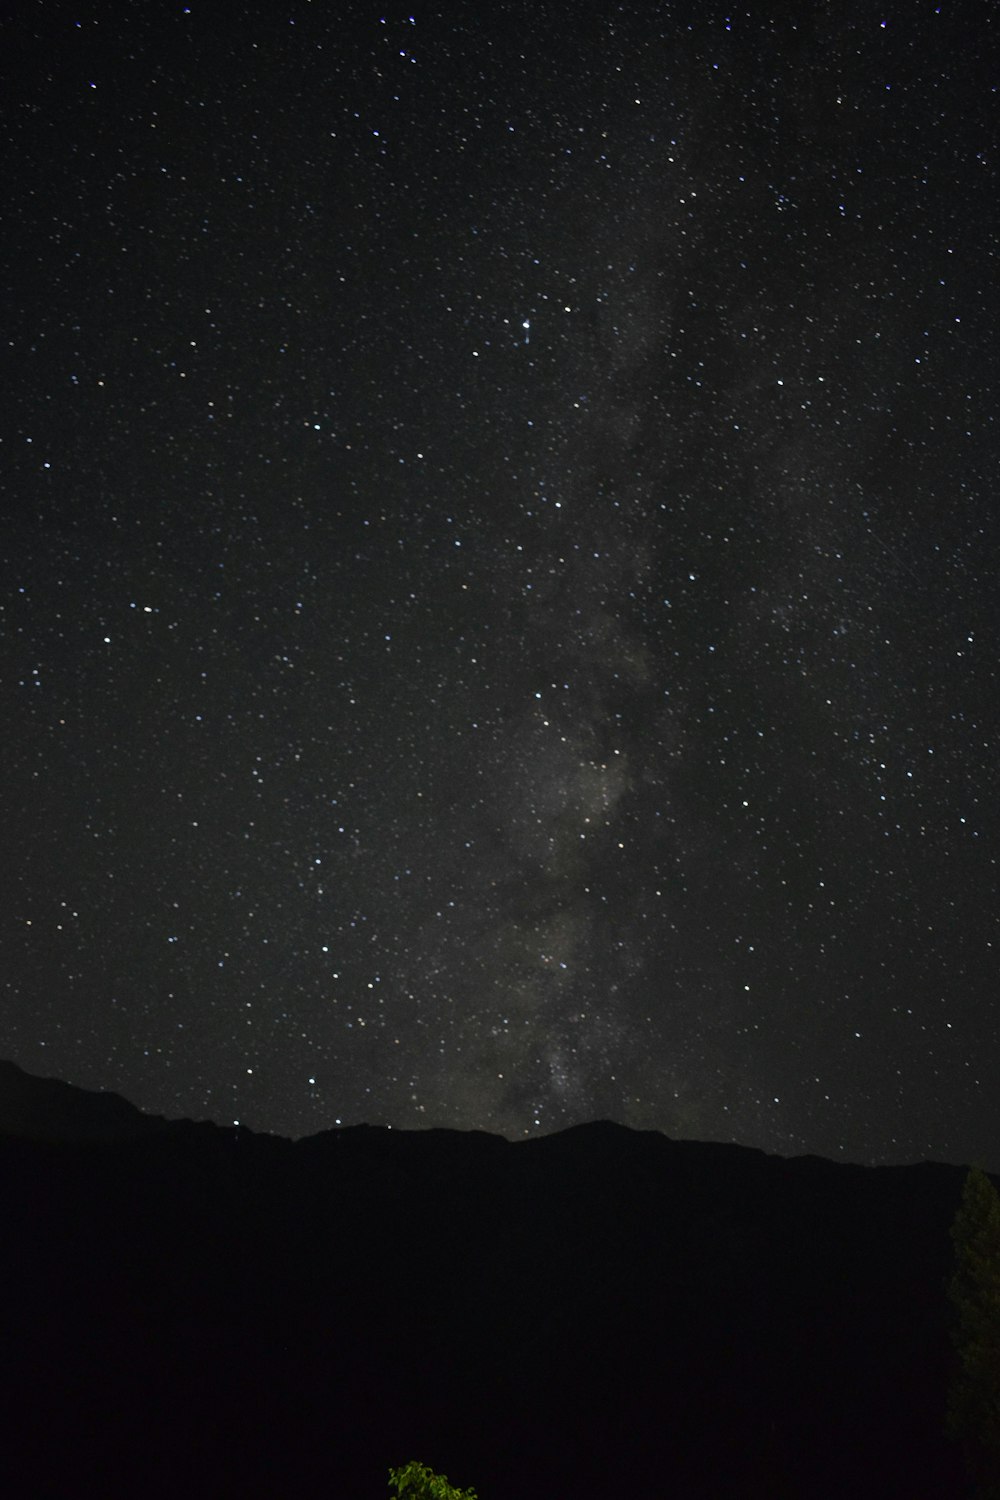 El cielo nocturno con estrellas y un árbol en primer plano